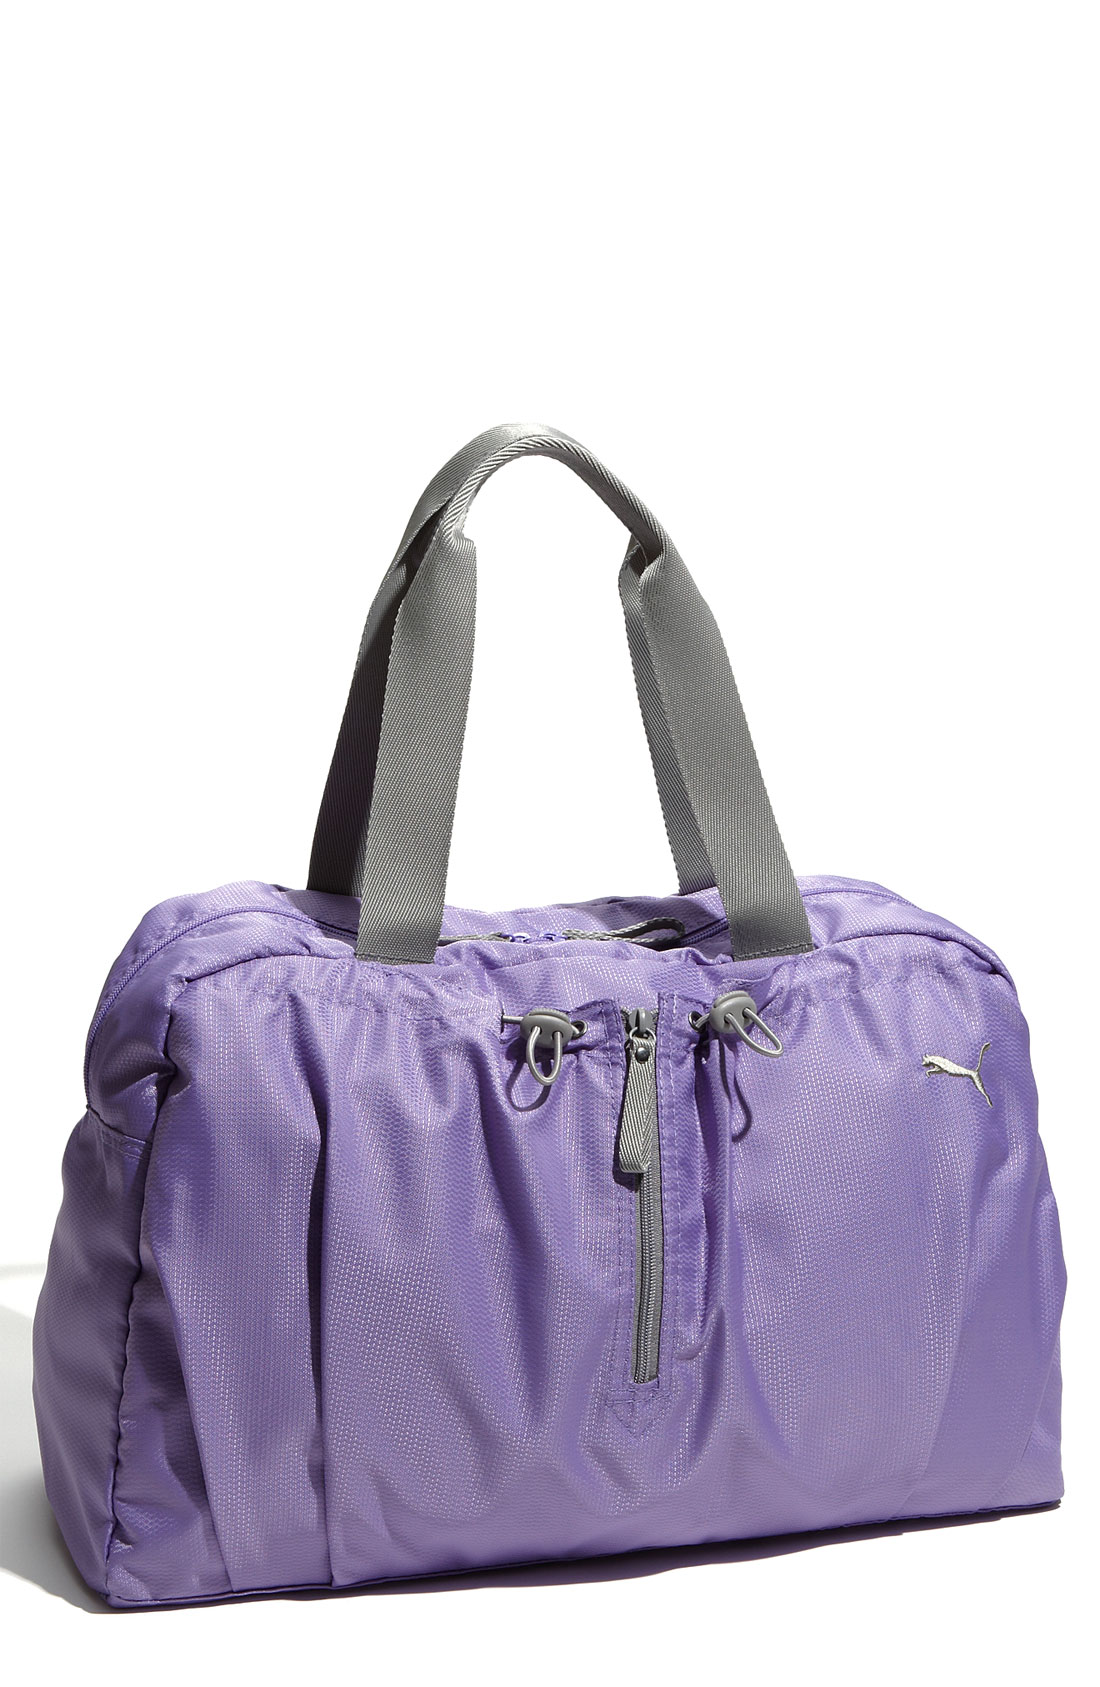 Puma Fitness Workout Bag in Purple (dahlia purple/ steel grey) | Lyst